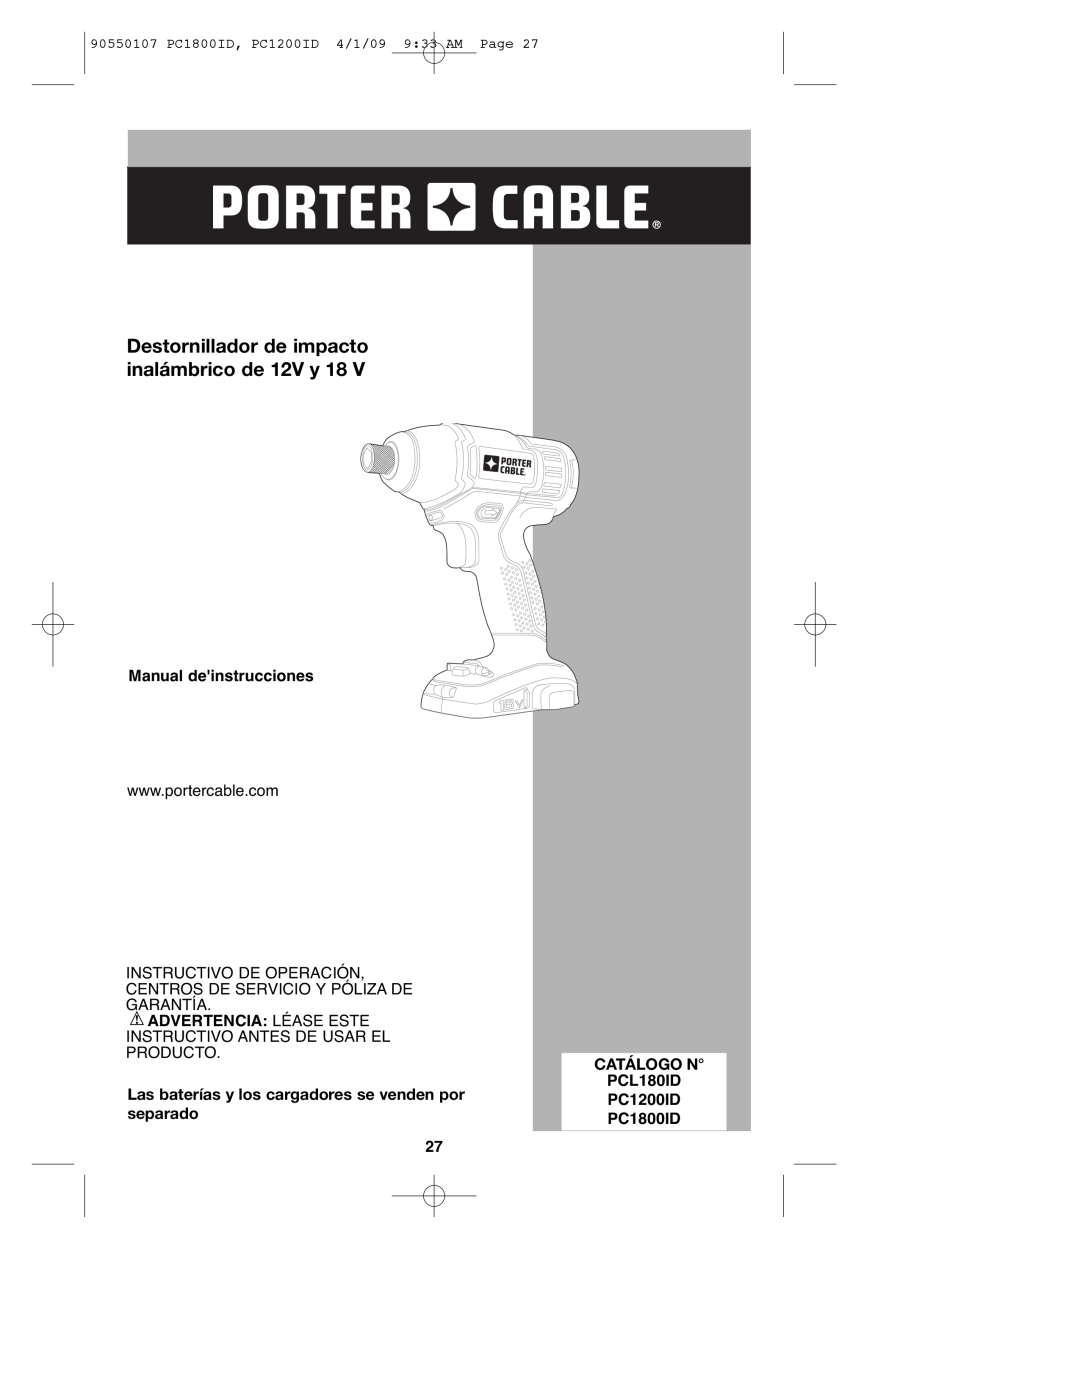 Porter-Cable PC1200ID, PCL180ID, PC1800ID, 90550107 Destornillador de impacto inalámbrico de 12V y 18, Catálogo N 